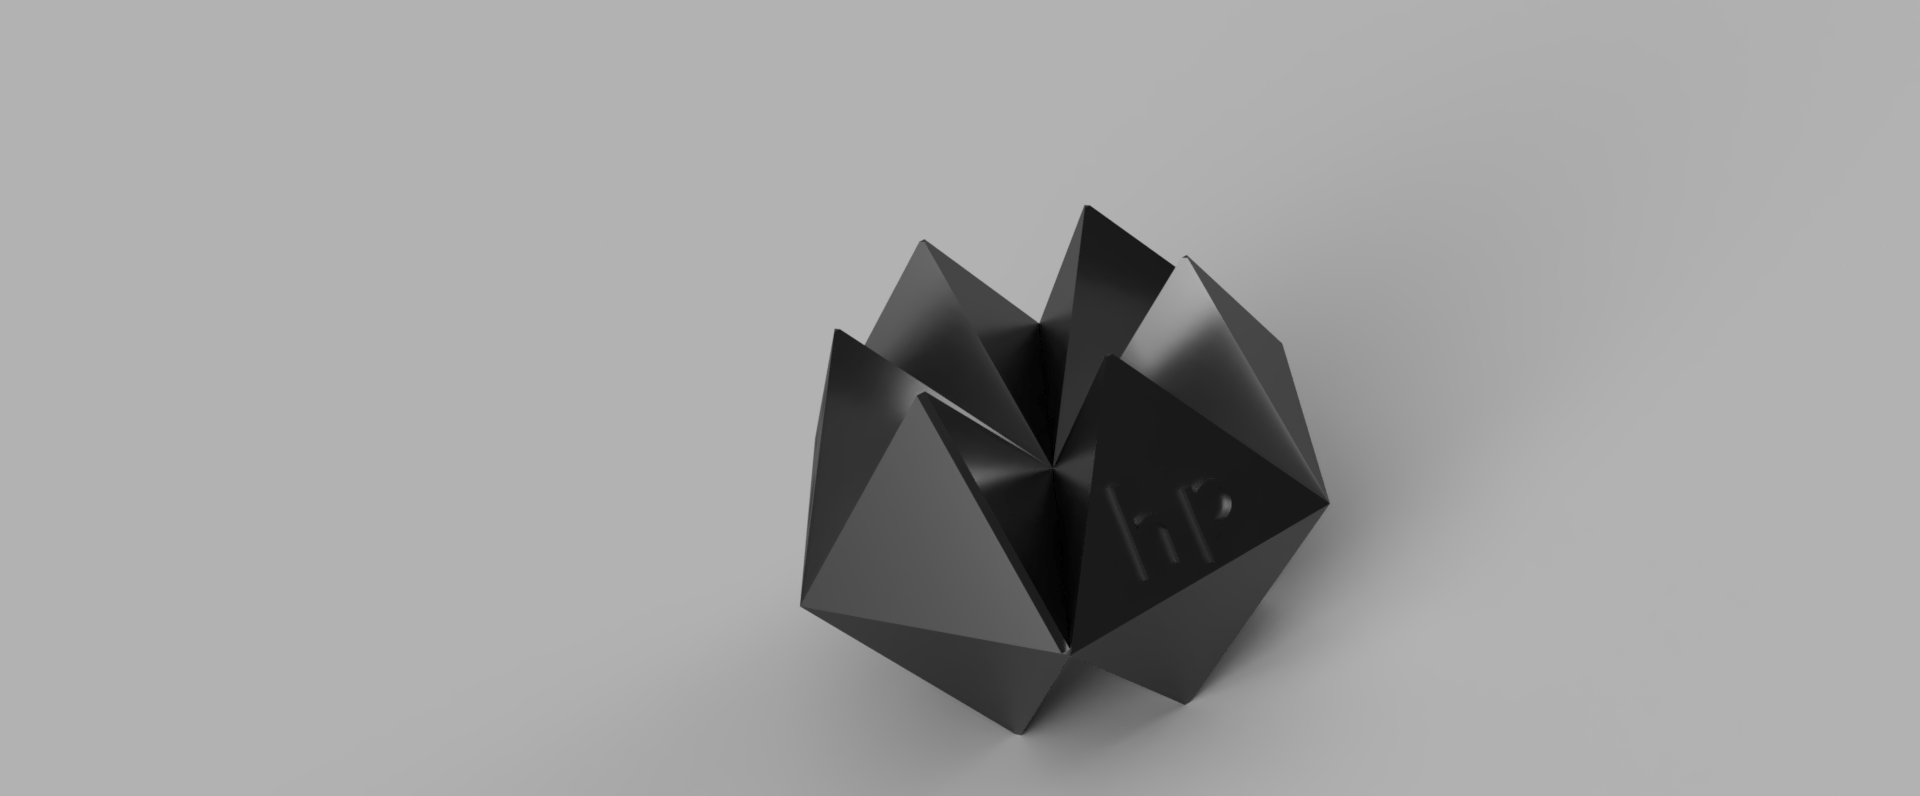 origami.png Télécharger fichier STL gratuit Origami#3DSPIRIT • Plan pour imprimante 3D, rem_gre